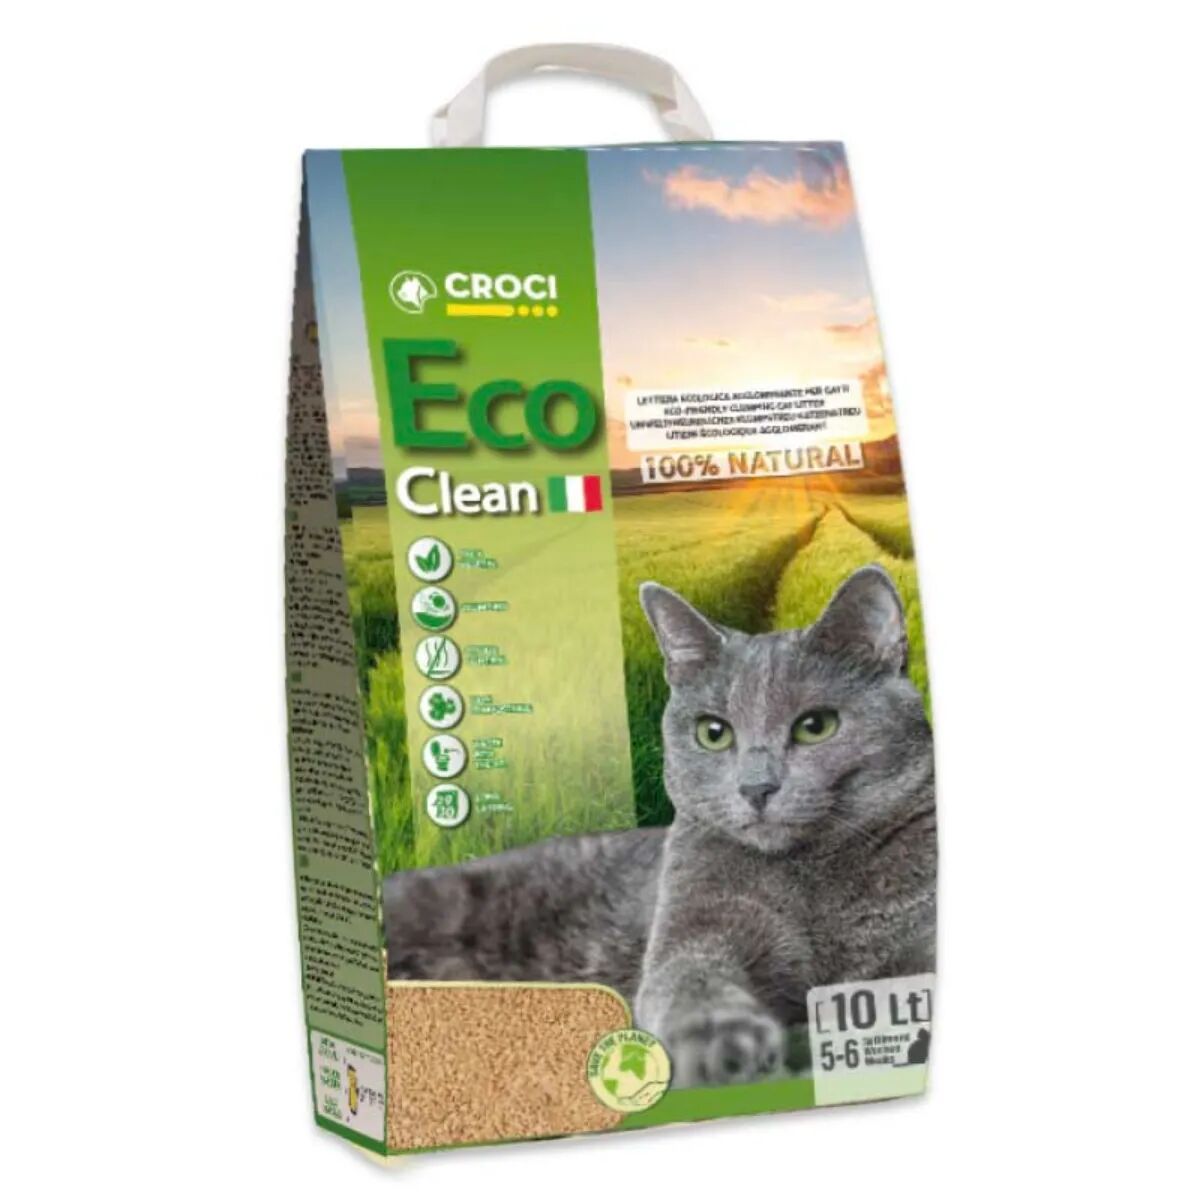 CROCI Lettiera per Gatto Eco Clean 10L